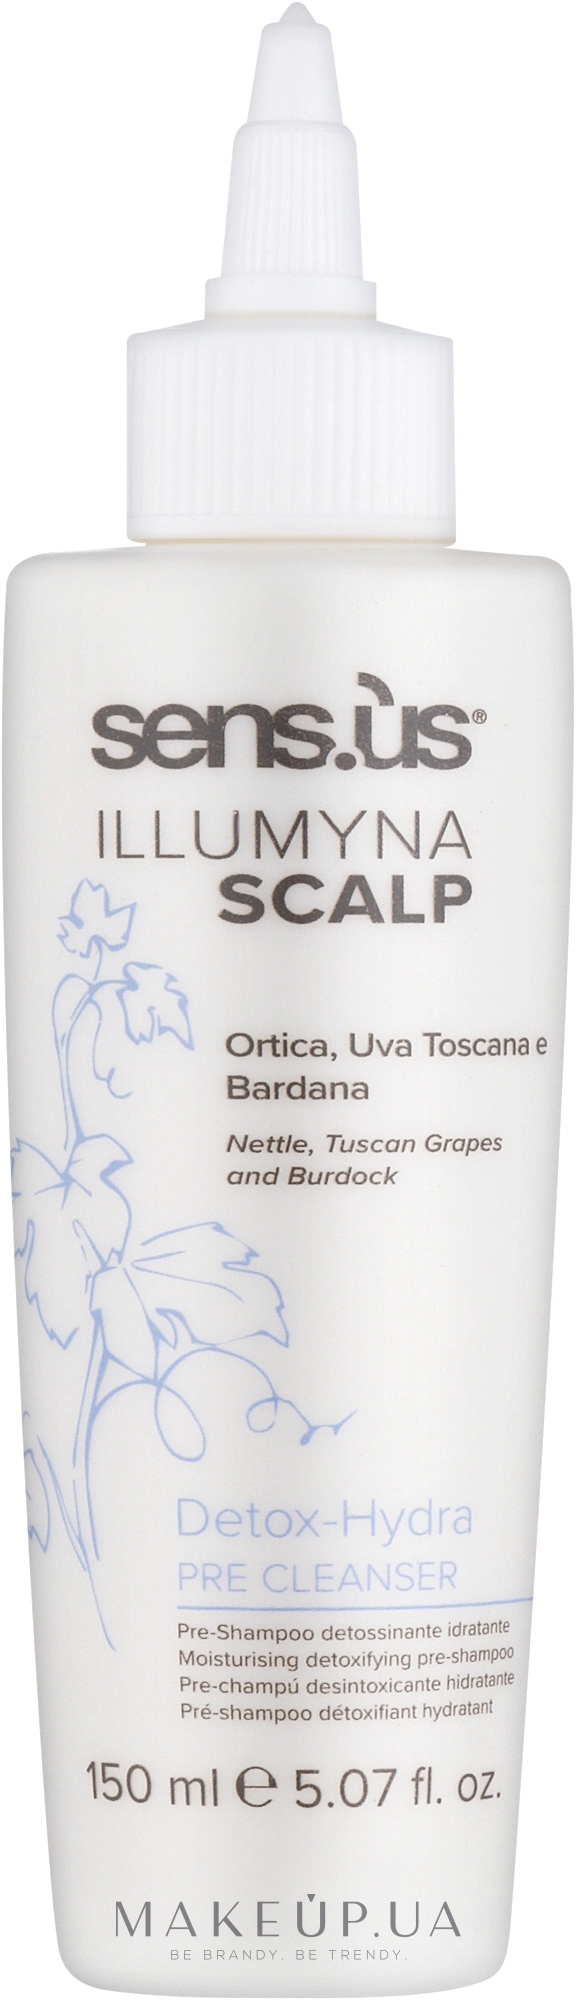 Детоксифікаційний зволожувальний шампунь - Sensus Illumyna Scalp Detox-Hydra Pre Cleanser — фото 150ml